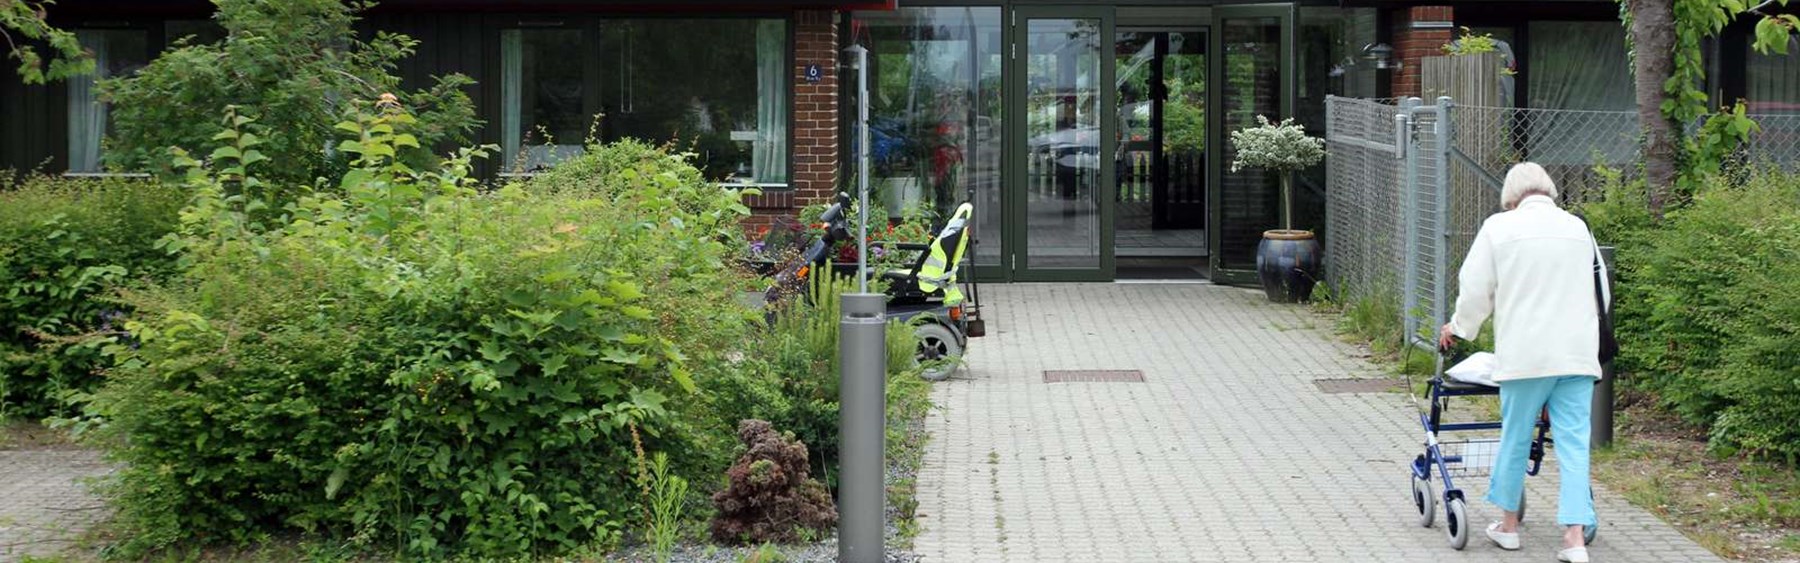 Plejecenter i Roskilde Kommune. En ældre borger med rollator er på vej mod indgangen.